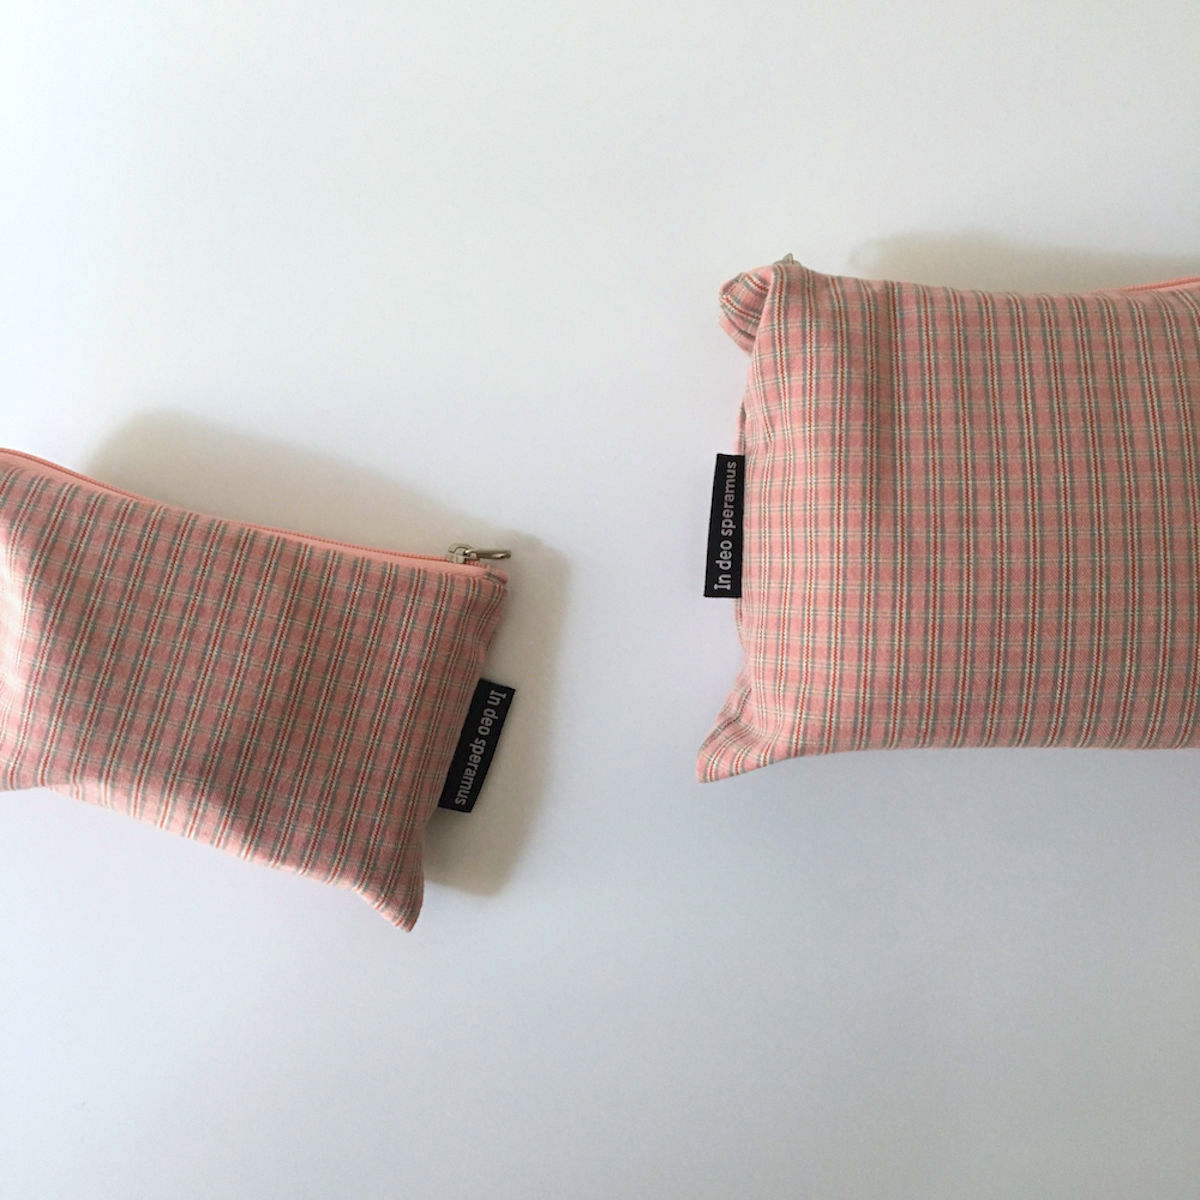 빈티지 핑크 파우치(Vintage pink pouch) 9,500원 - 인데오스페라무스 패션잡화, 파우치, 다용도파우치, 패브릭 바보사랑 빈티지 핑크 파우치(Vintage pink pouch) 9,500원 - 인데오스페라무스 패션잡화, 파우치, 다용도파우치, 패브릭 바보사랑